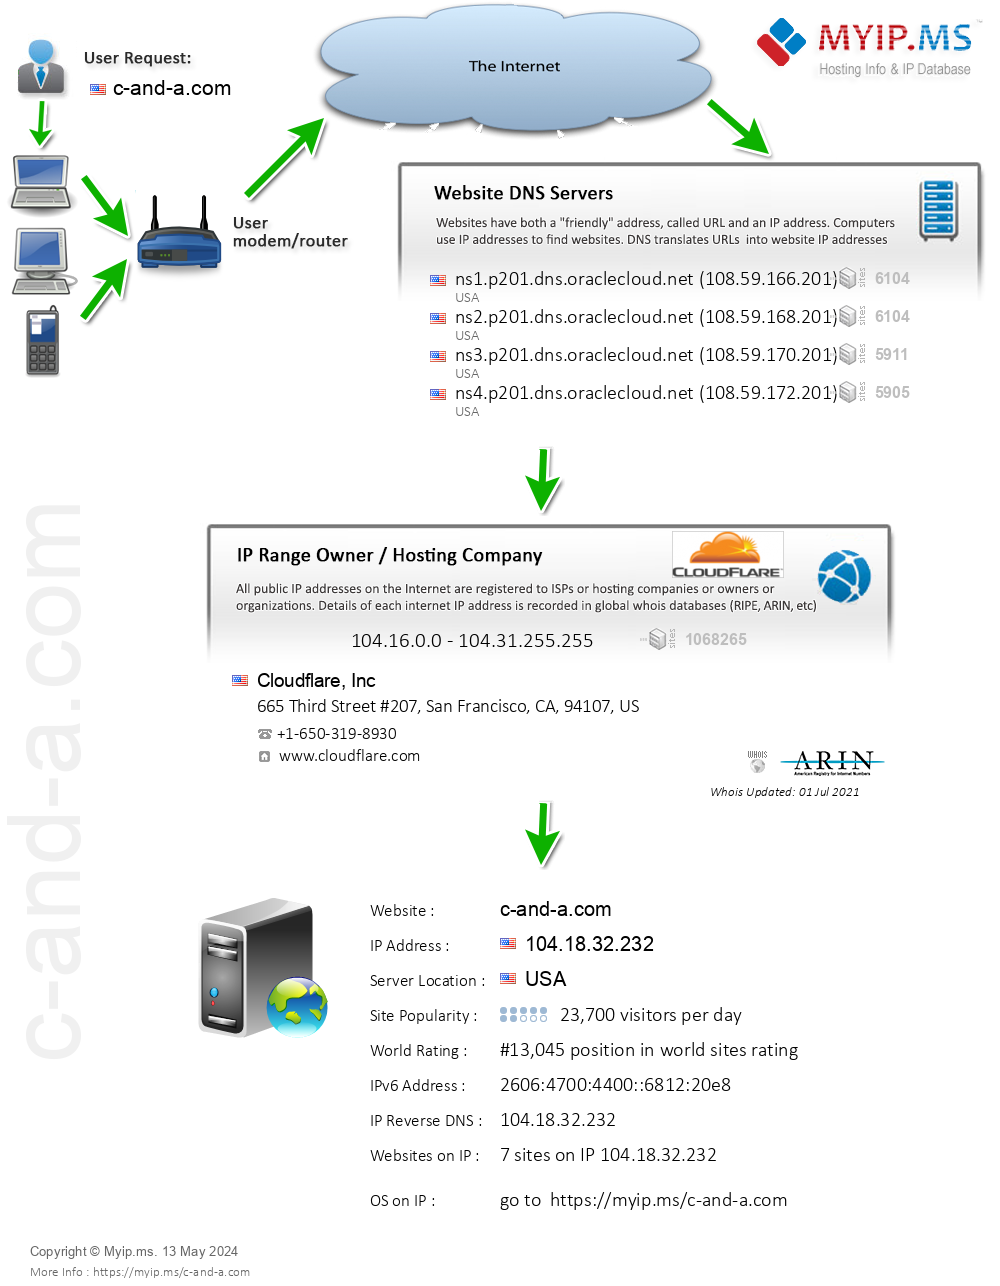 C-and-a.com - Website Hosting Visual IP Diagram